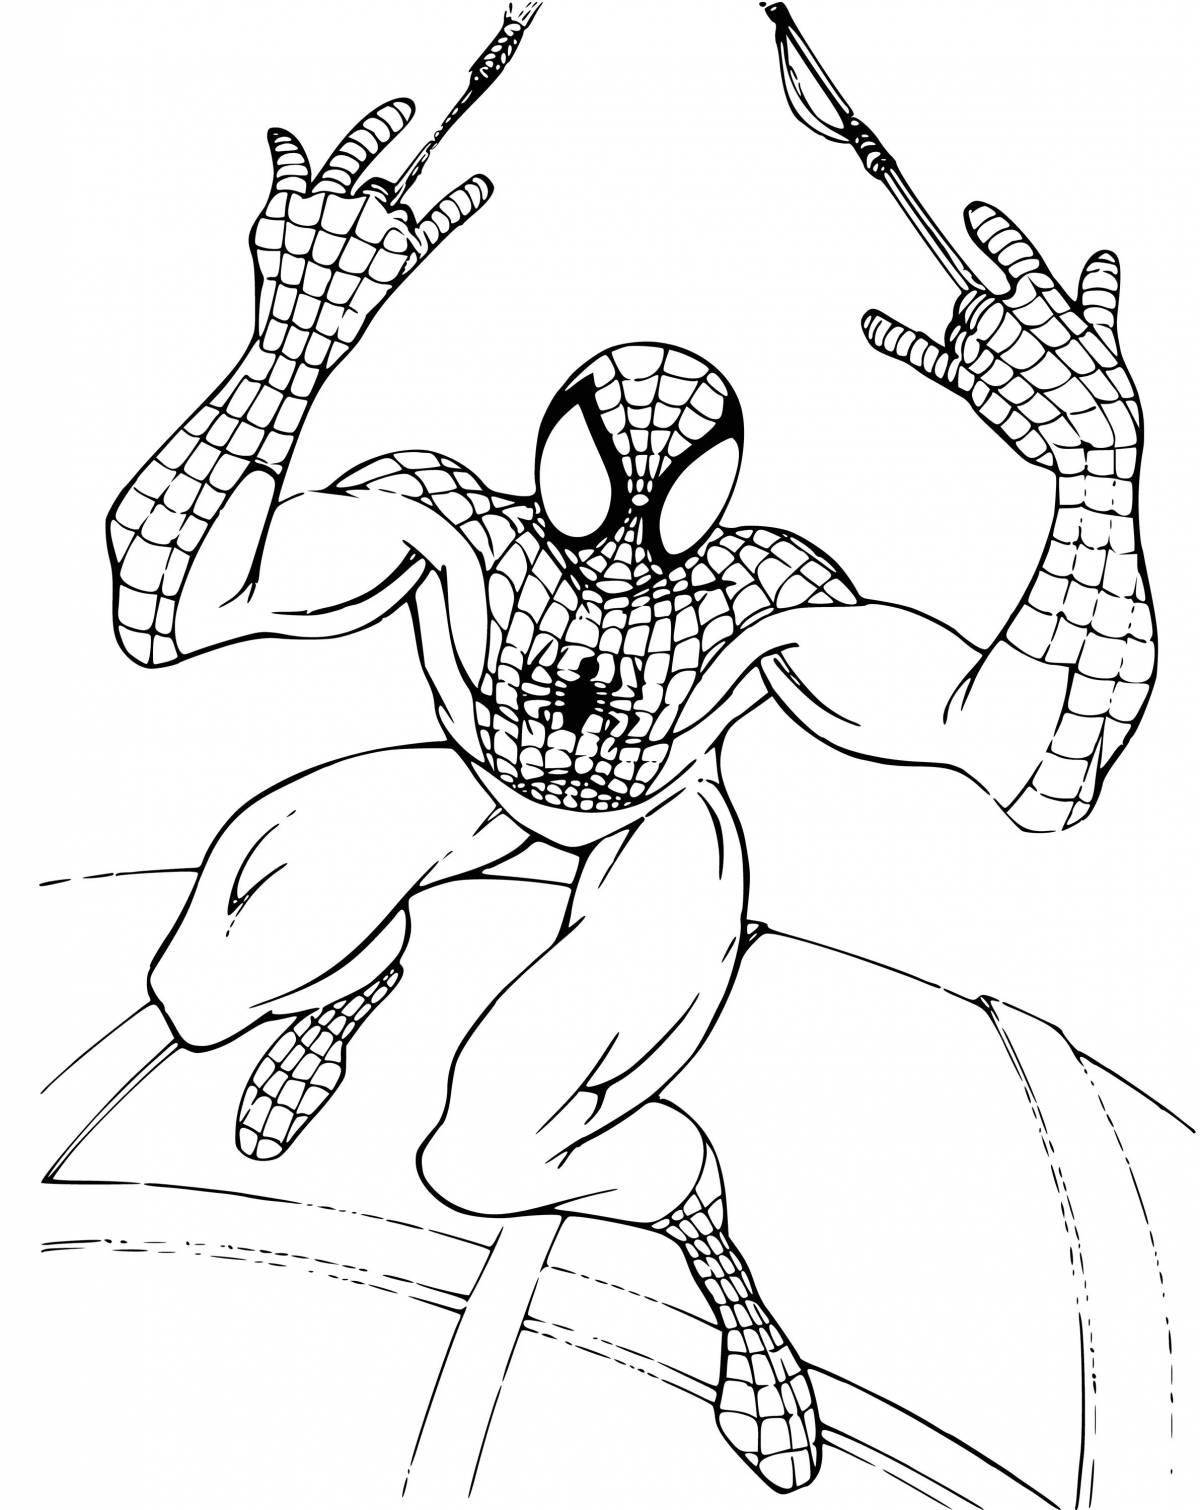 Монументальный рисунок человека-паука